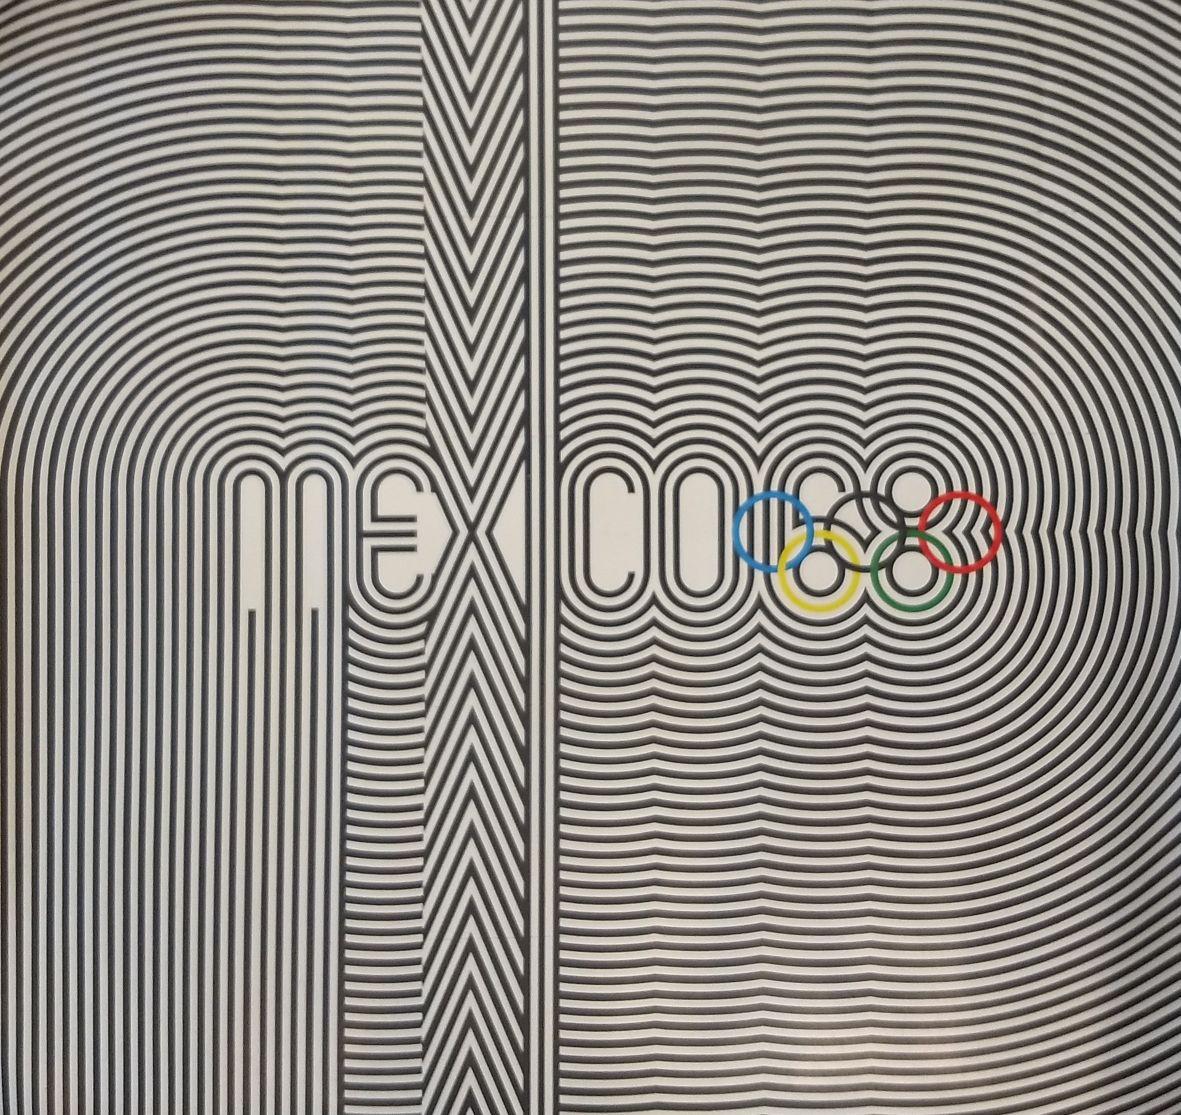 Affiches Op-Art originales imprimées pour les Jeux Olympiques de Mexico 68. Le design iconique est dérivé du logo qui a intégré avec succès 